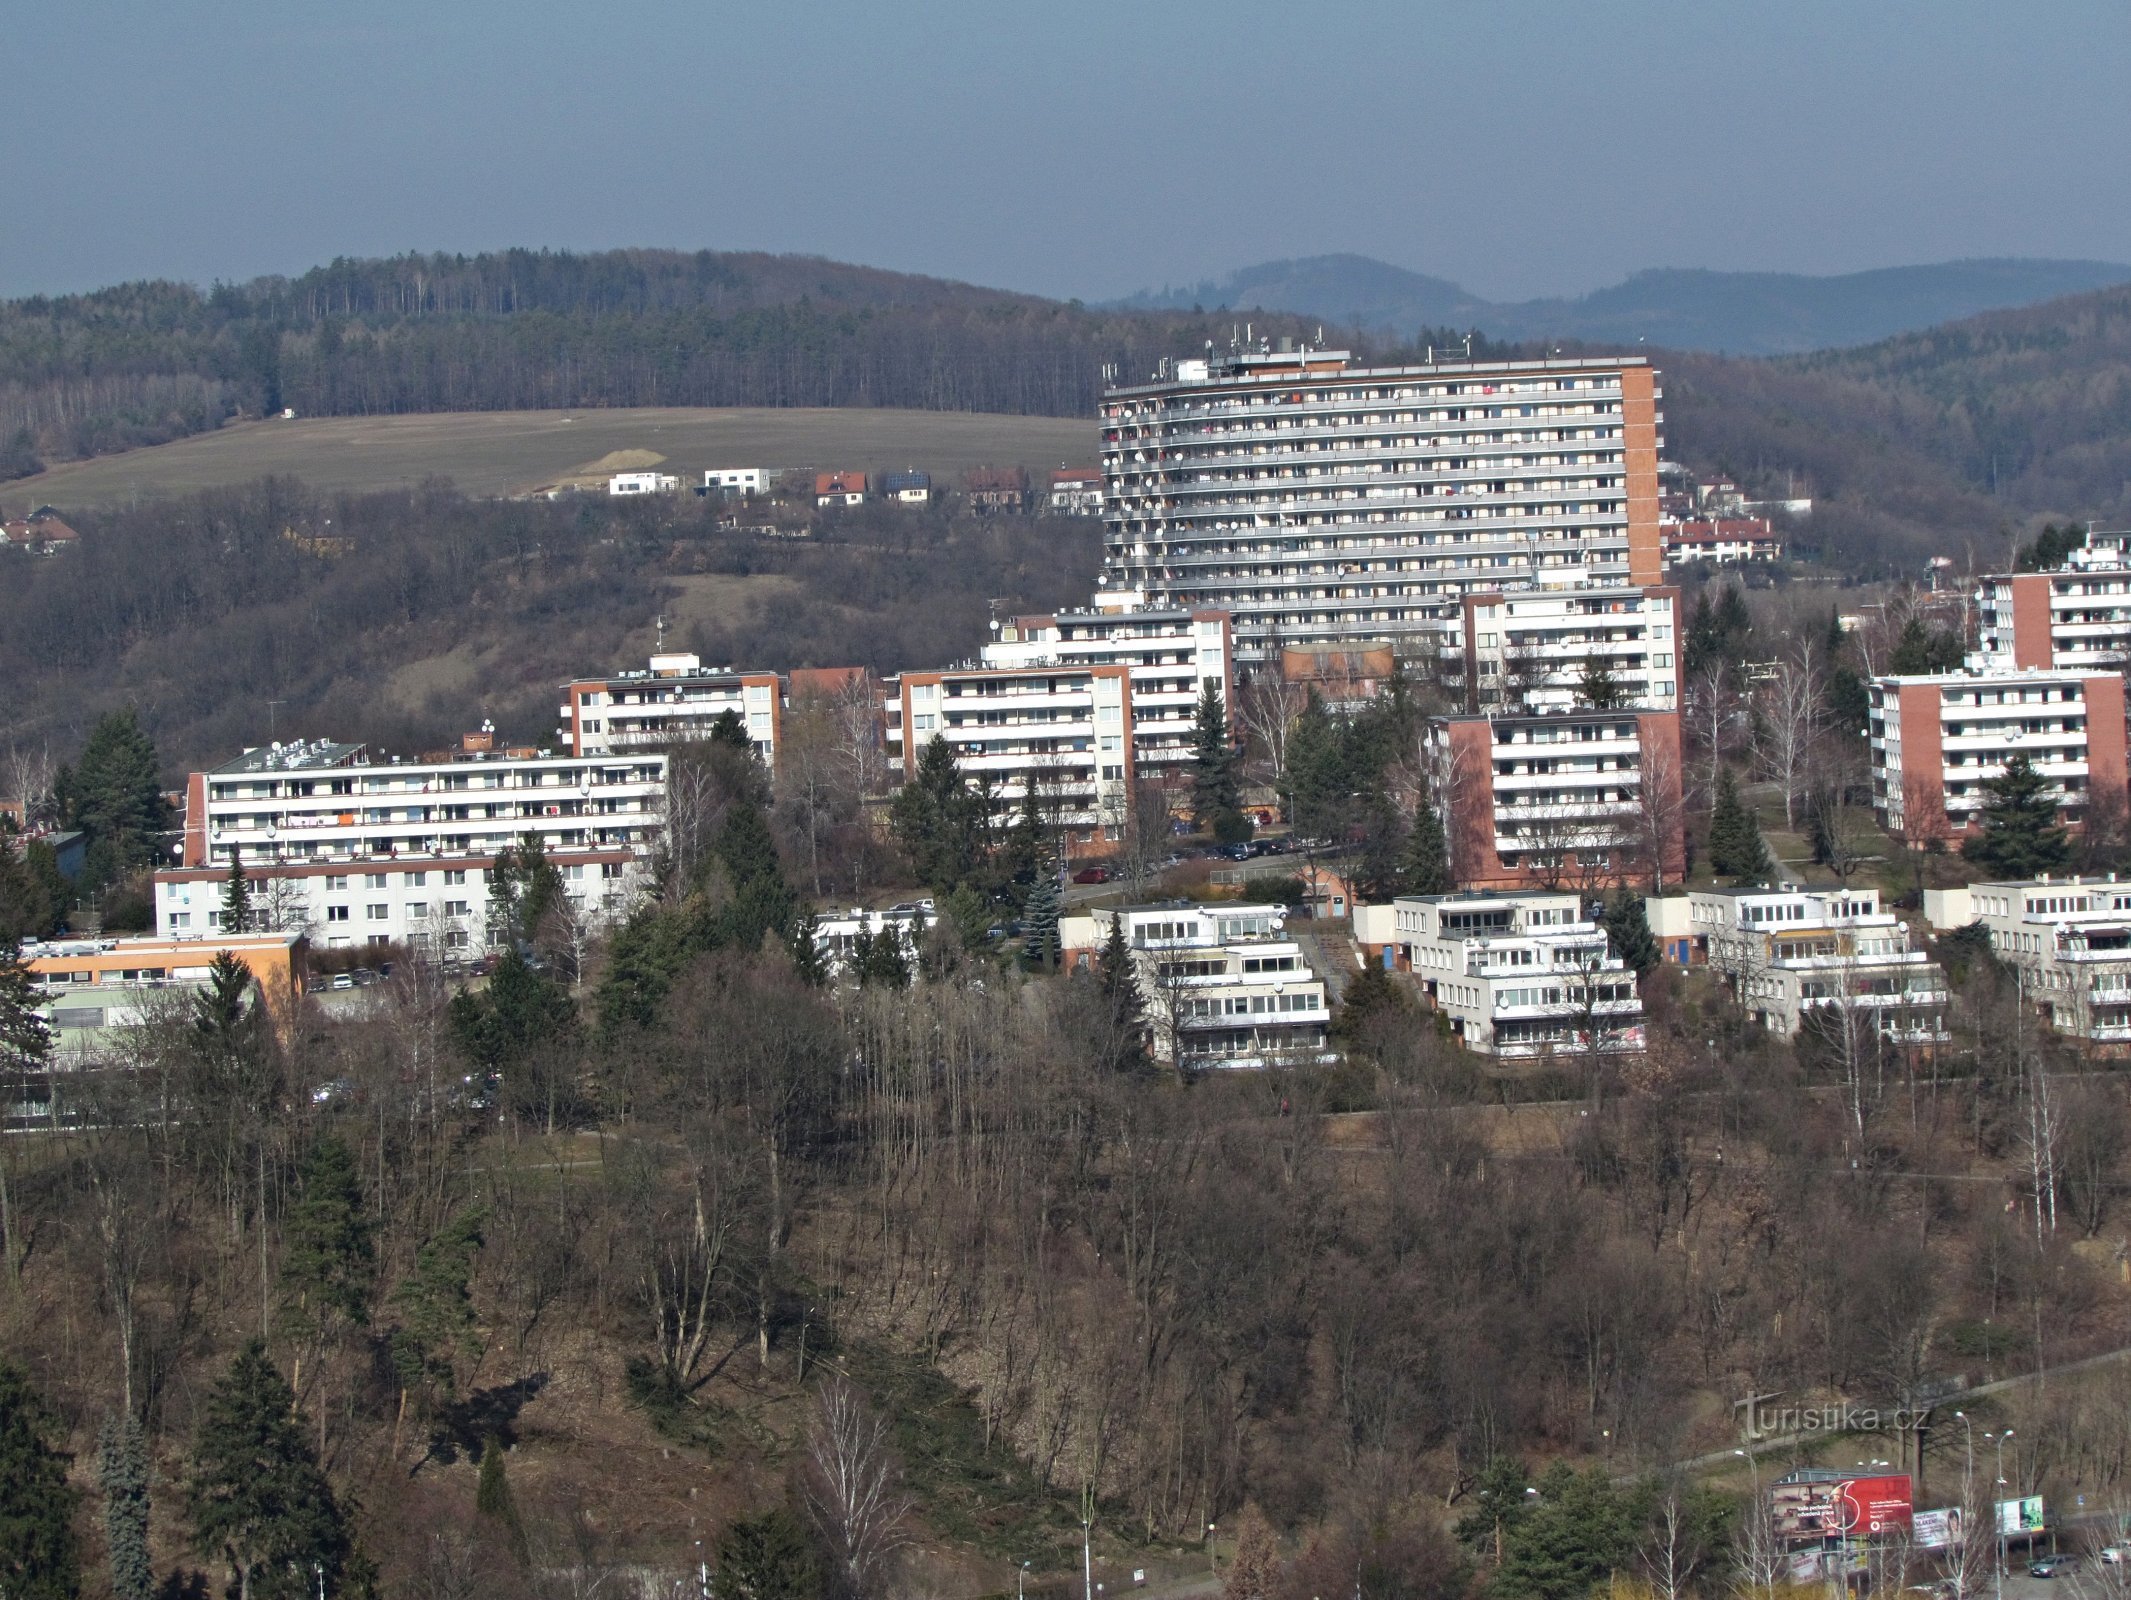 Ett besök i skyskrapan och via Barabáš till Zlín